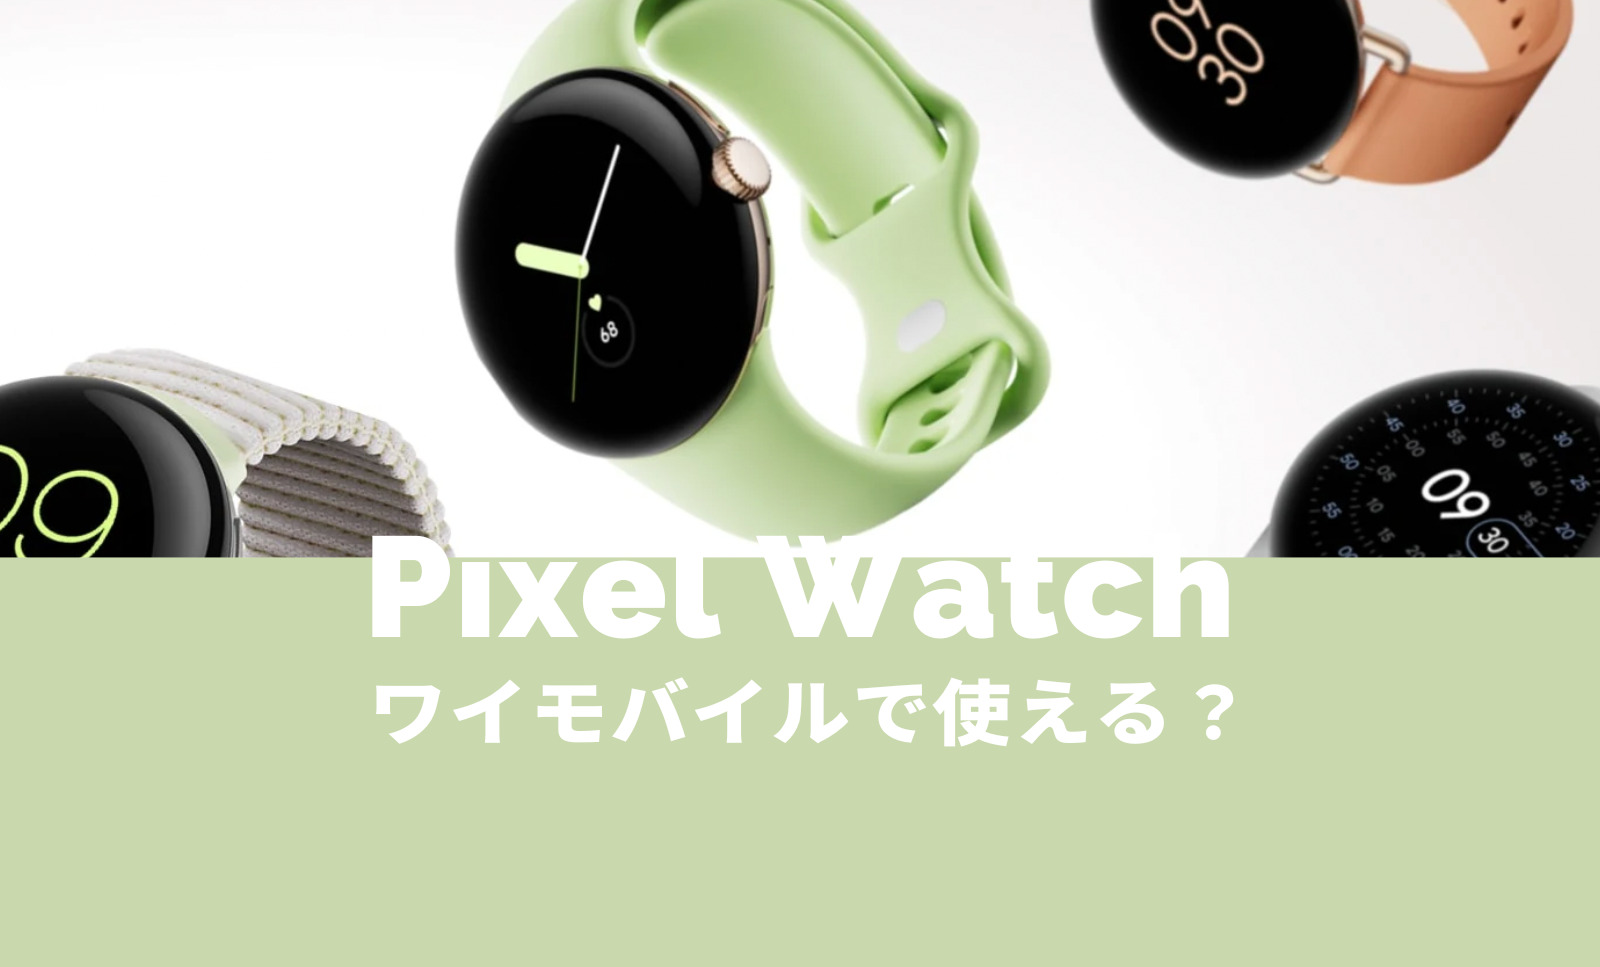 Pixel Watch 2(ピクセルウォッチ)はワイモバイルで使える？LTEモデル発売や販売は？【Google】のサムネイル画像